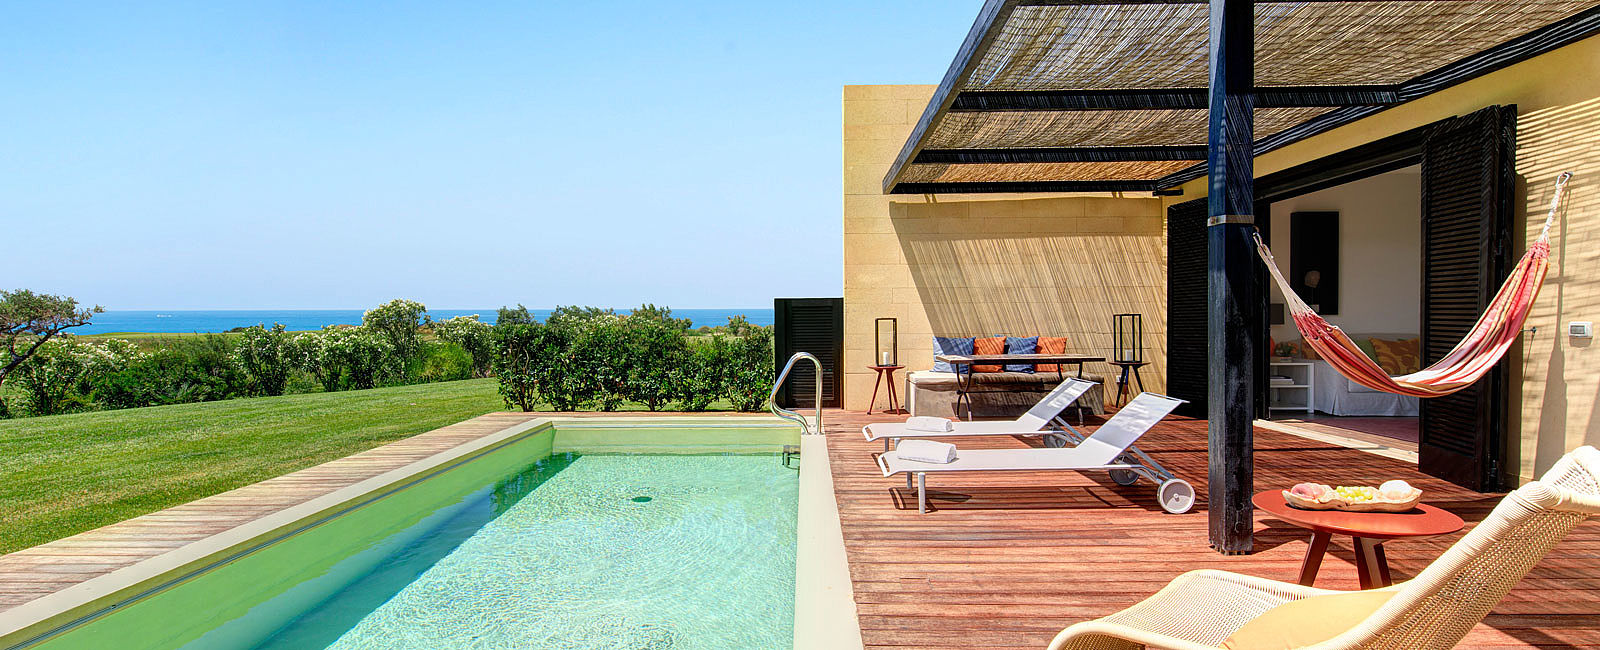 HOTEL NEWS
 Verdura Resort Sizilien: Exklusive Villas für höchste Ansprüche 
